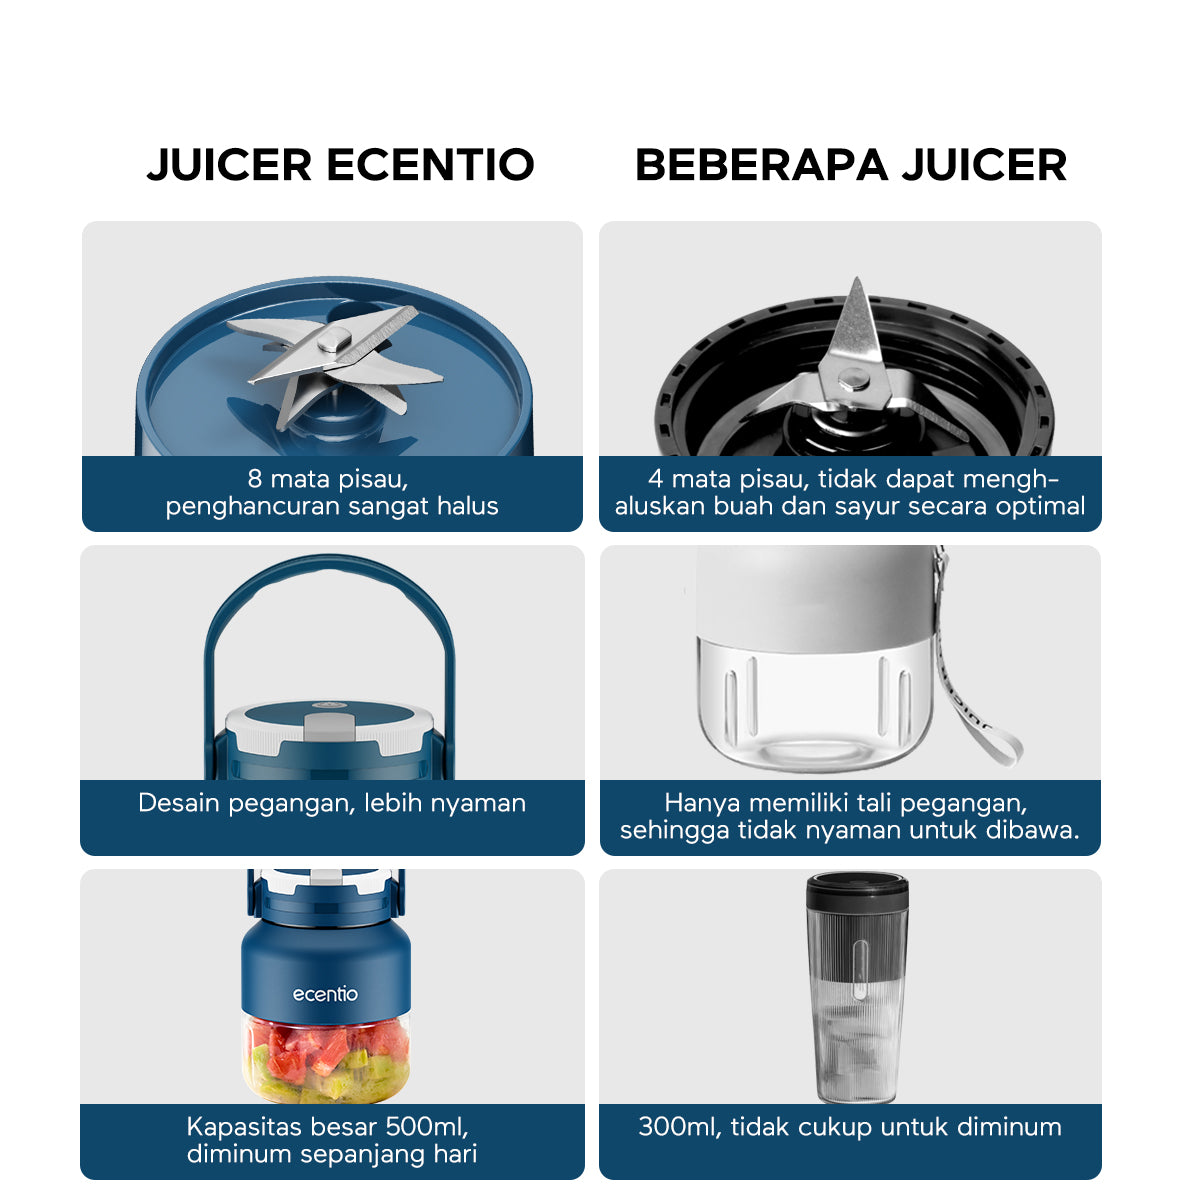 ecentio Juicer portable Blender 8 mata pisau 500ml - ecentio